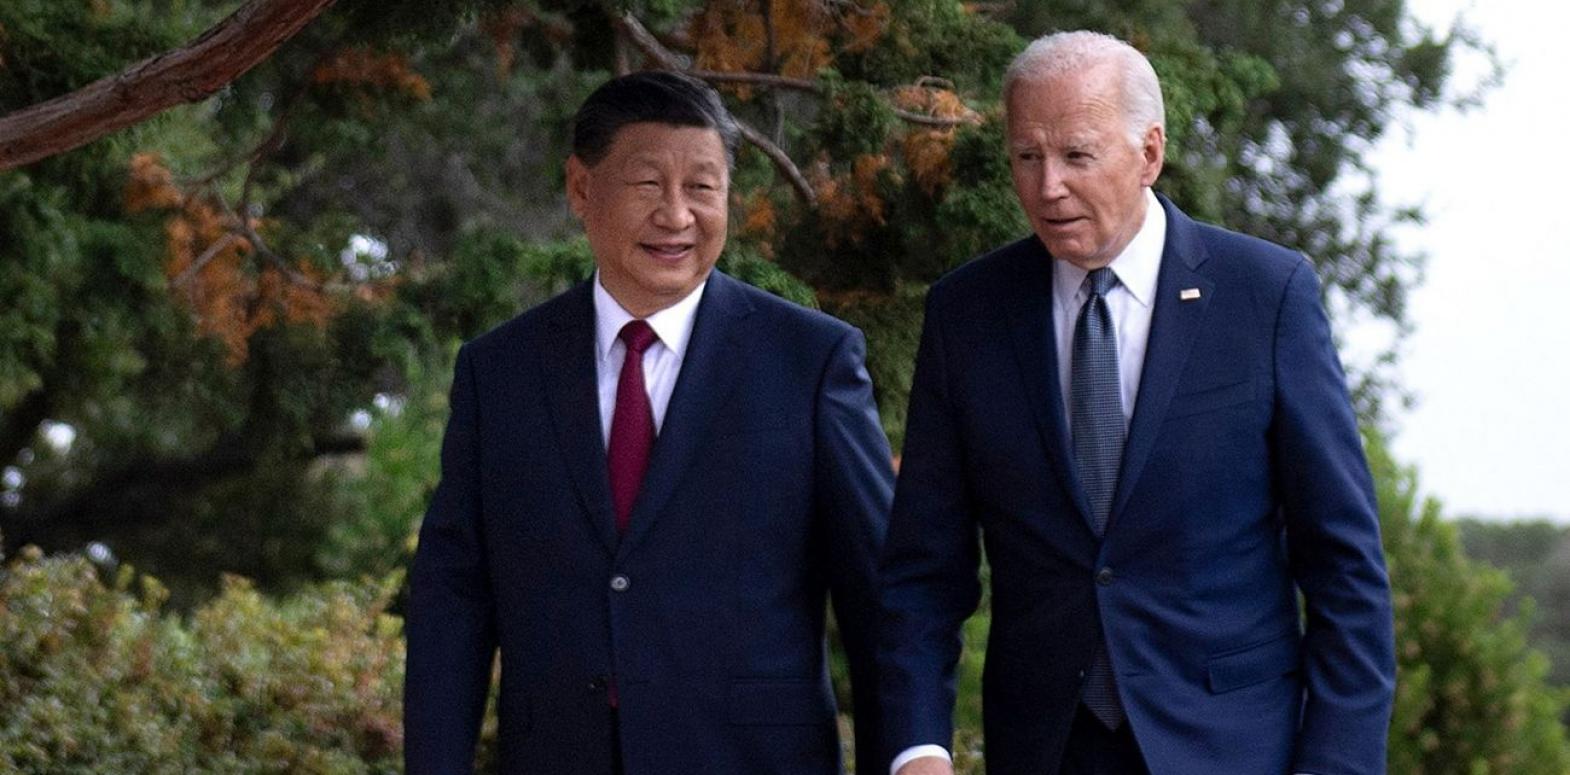 (Не) участники. Какая роль США и Китая на саммите мира по Украине и что если их лидеров не будет